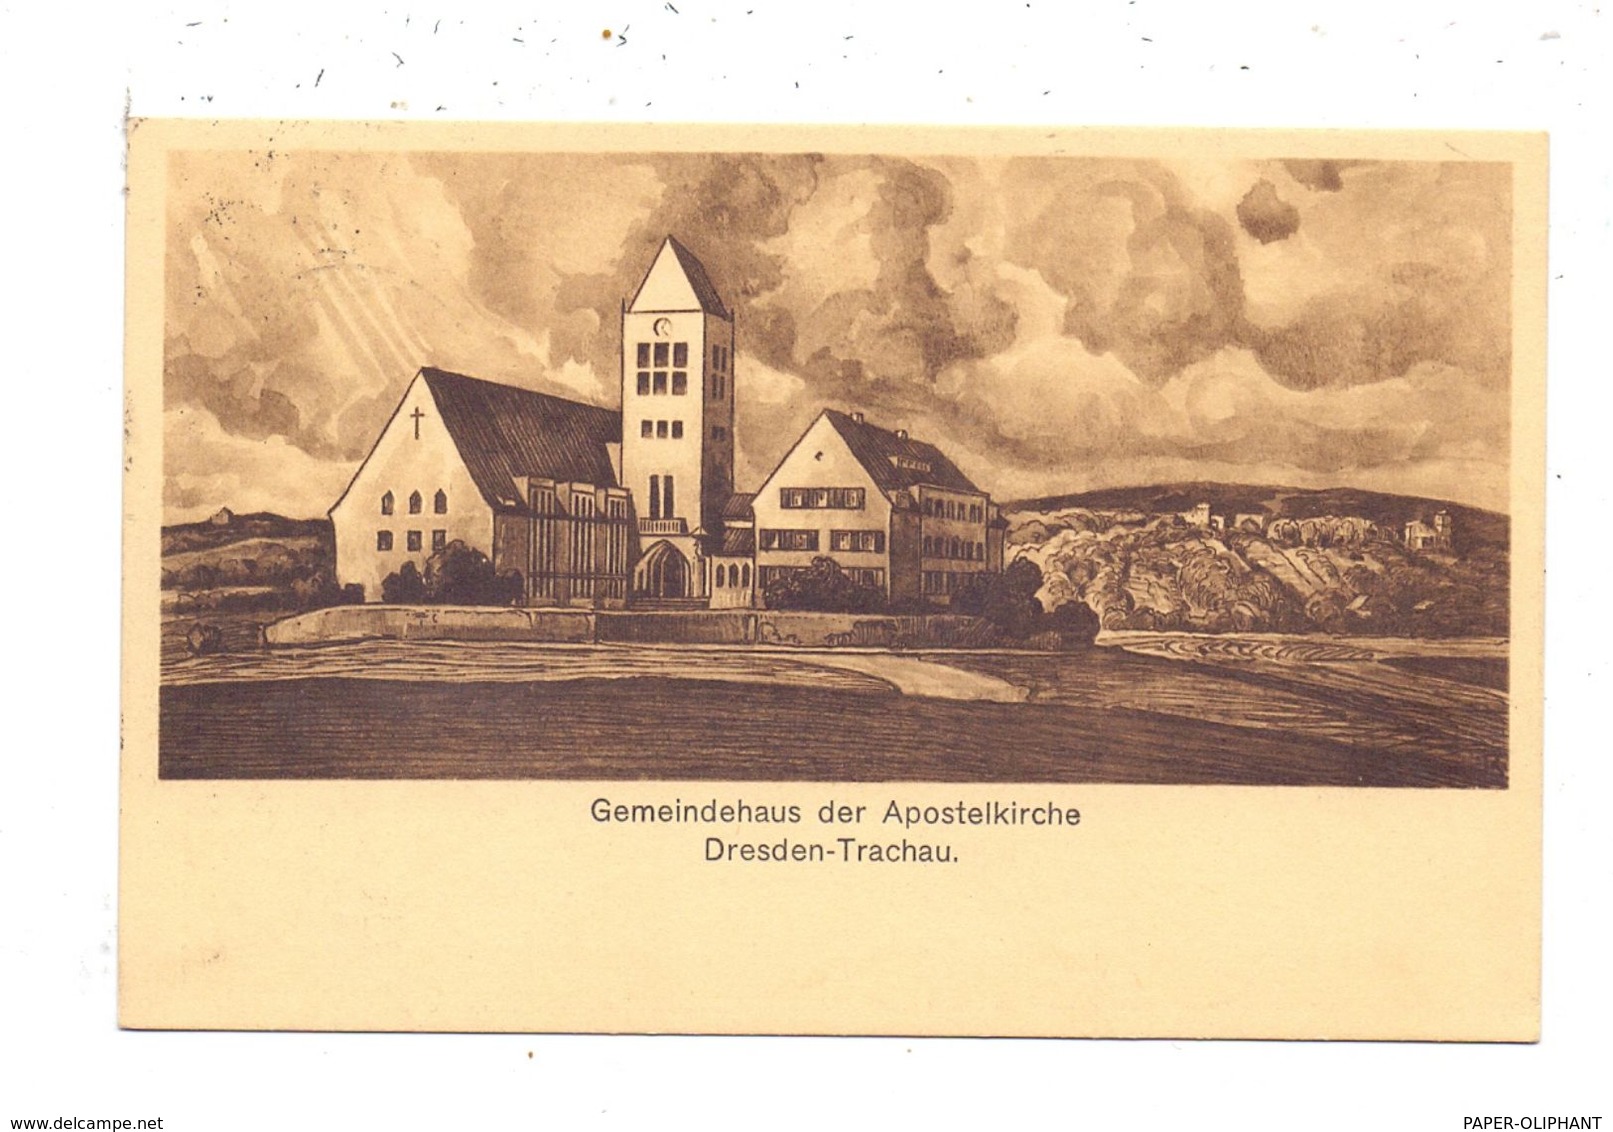 0-8000 DRESDEN - TRACHAU, Gemeindehaus Der Apostelkirche, 1928, Kirchbauverein - Dresden